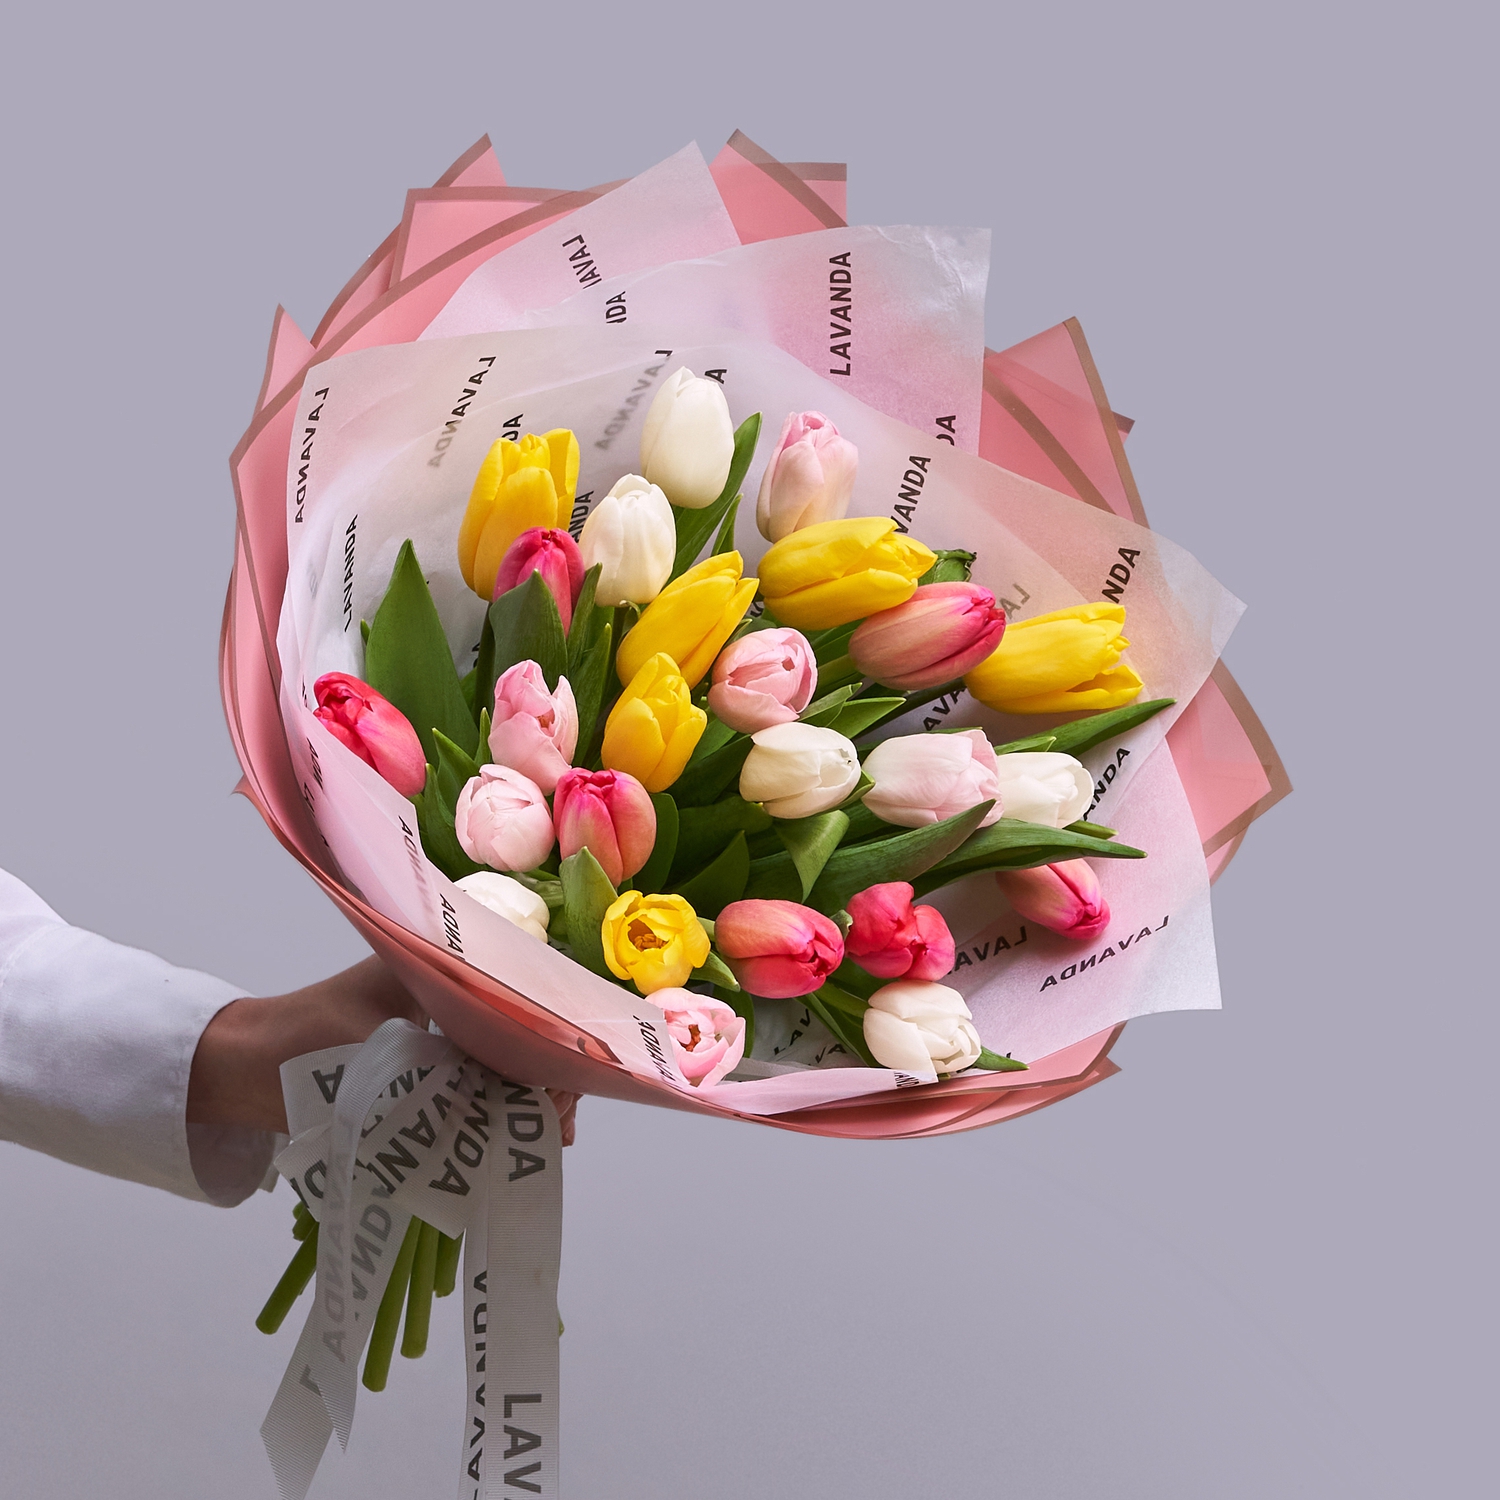 25 ярких тюльпанов в стильной упаковке